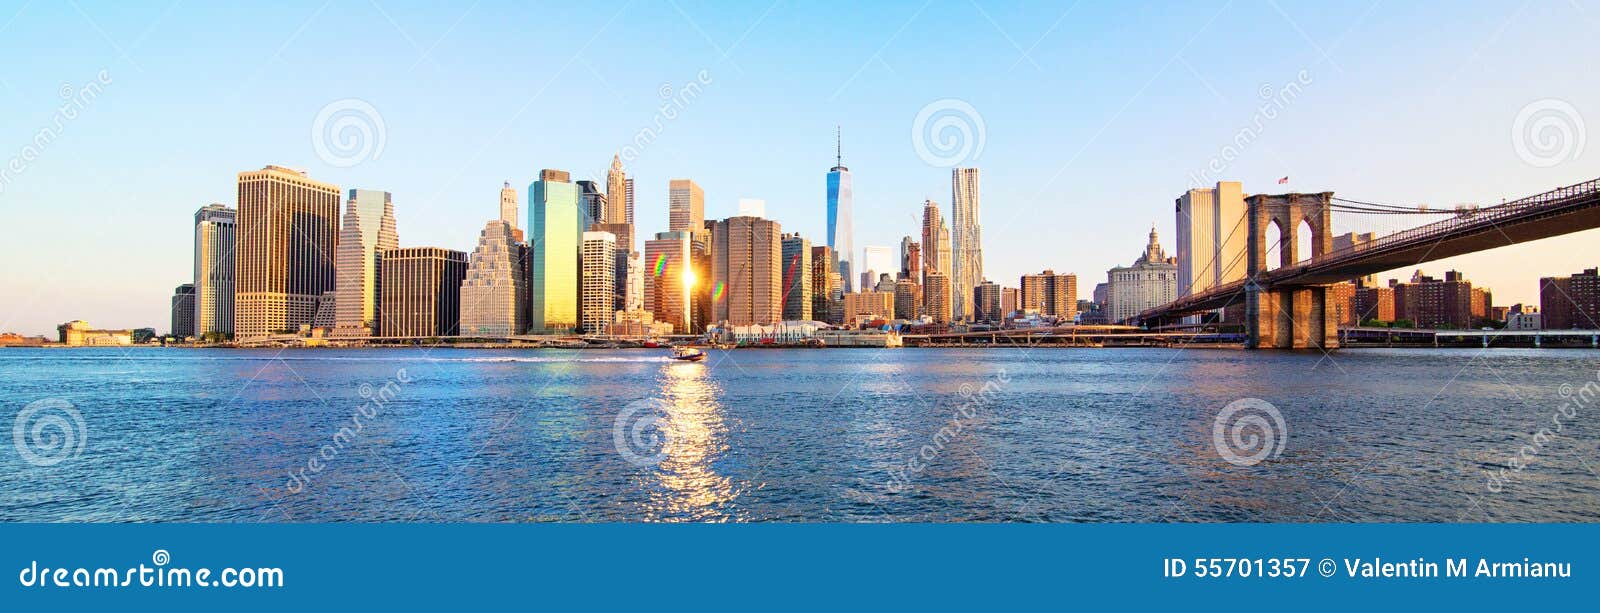 panorama new york city skyline